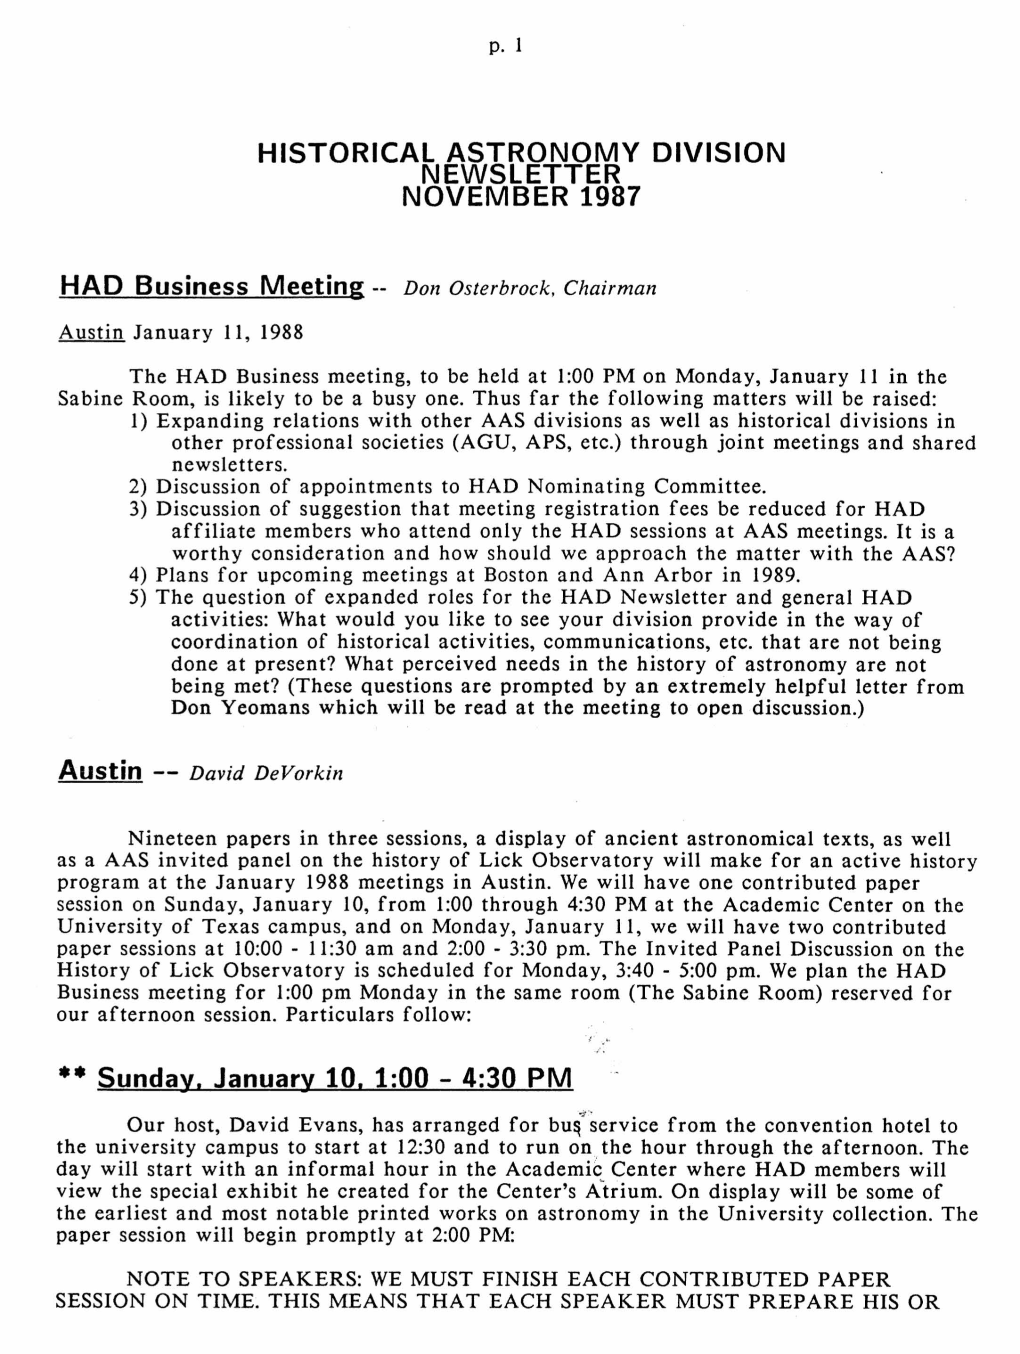 Historical Astronomy Division Newsletter November 1987